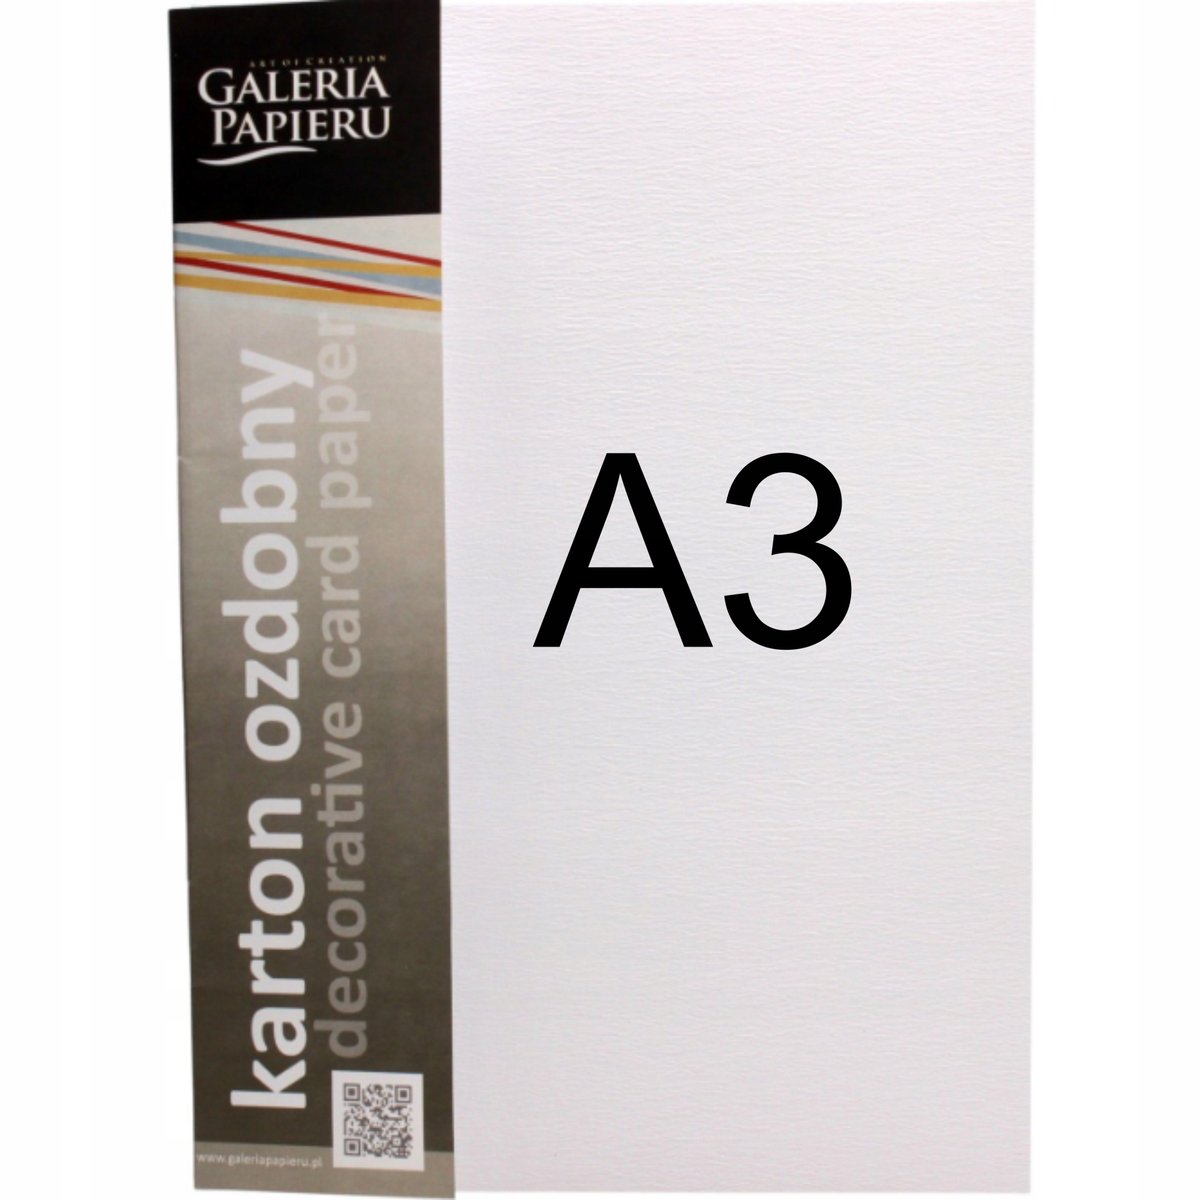 Galeria Papieru Karton wizytówkowy A3 250g Płótno biały (50)